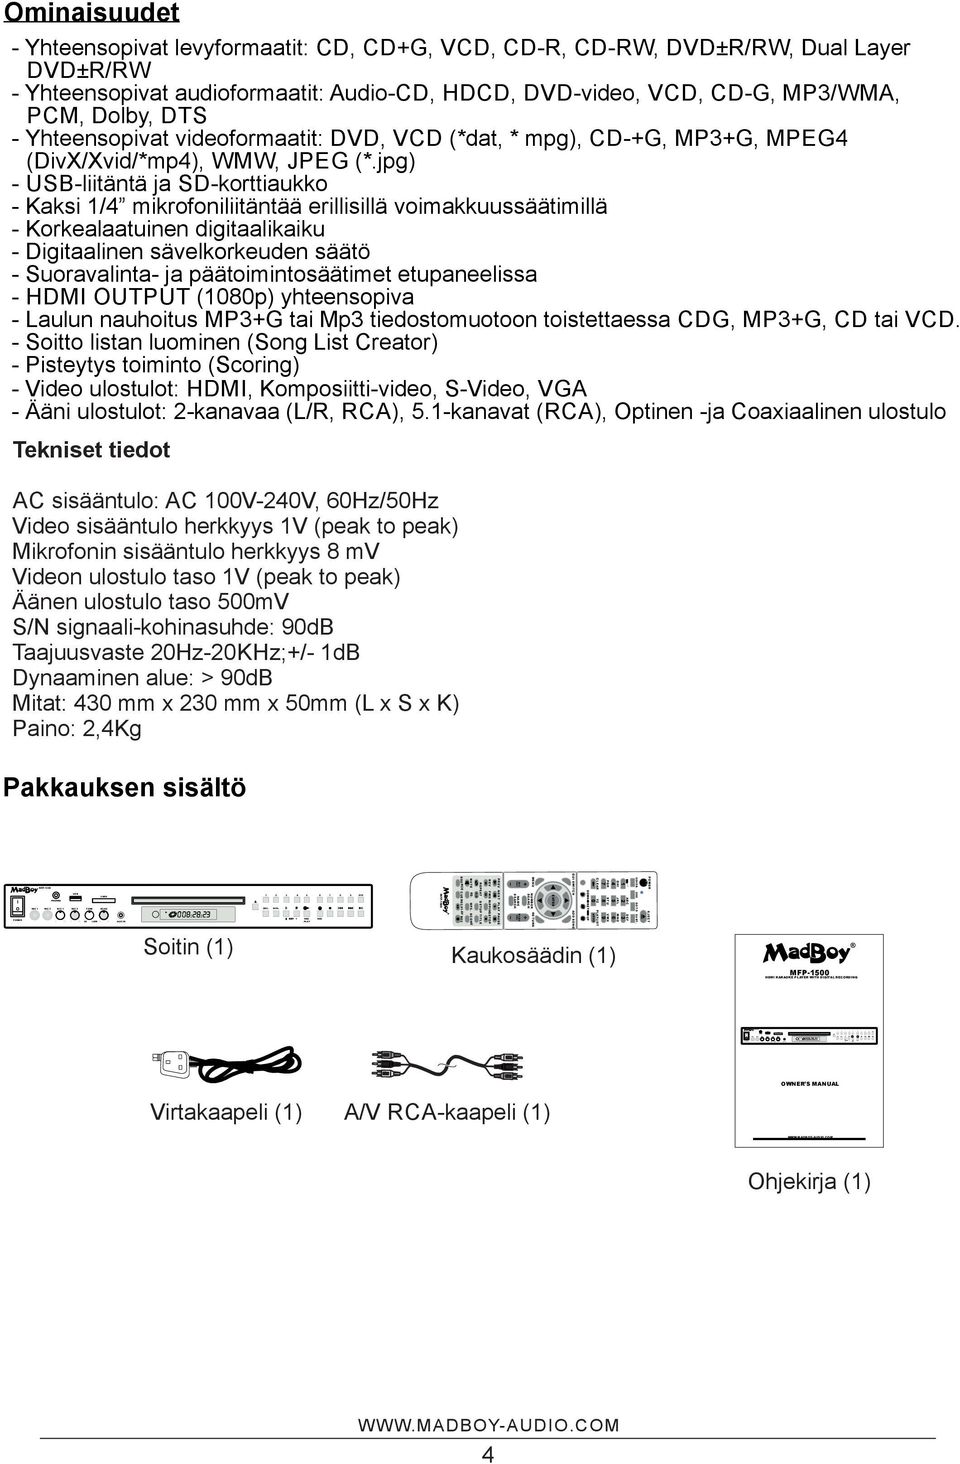 jpg) - USB-liitäntä ja SD-korttiaukko - Kaksi 1/4 mikrofoniliitäntää erillisillä voimakkuussäätimillä - Korkealaatuinen digitaalikaiku - Digitaalinen sävelkorkeuden säätö - Suoravalinta- ja